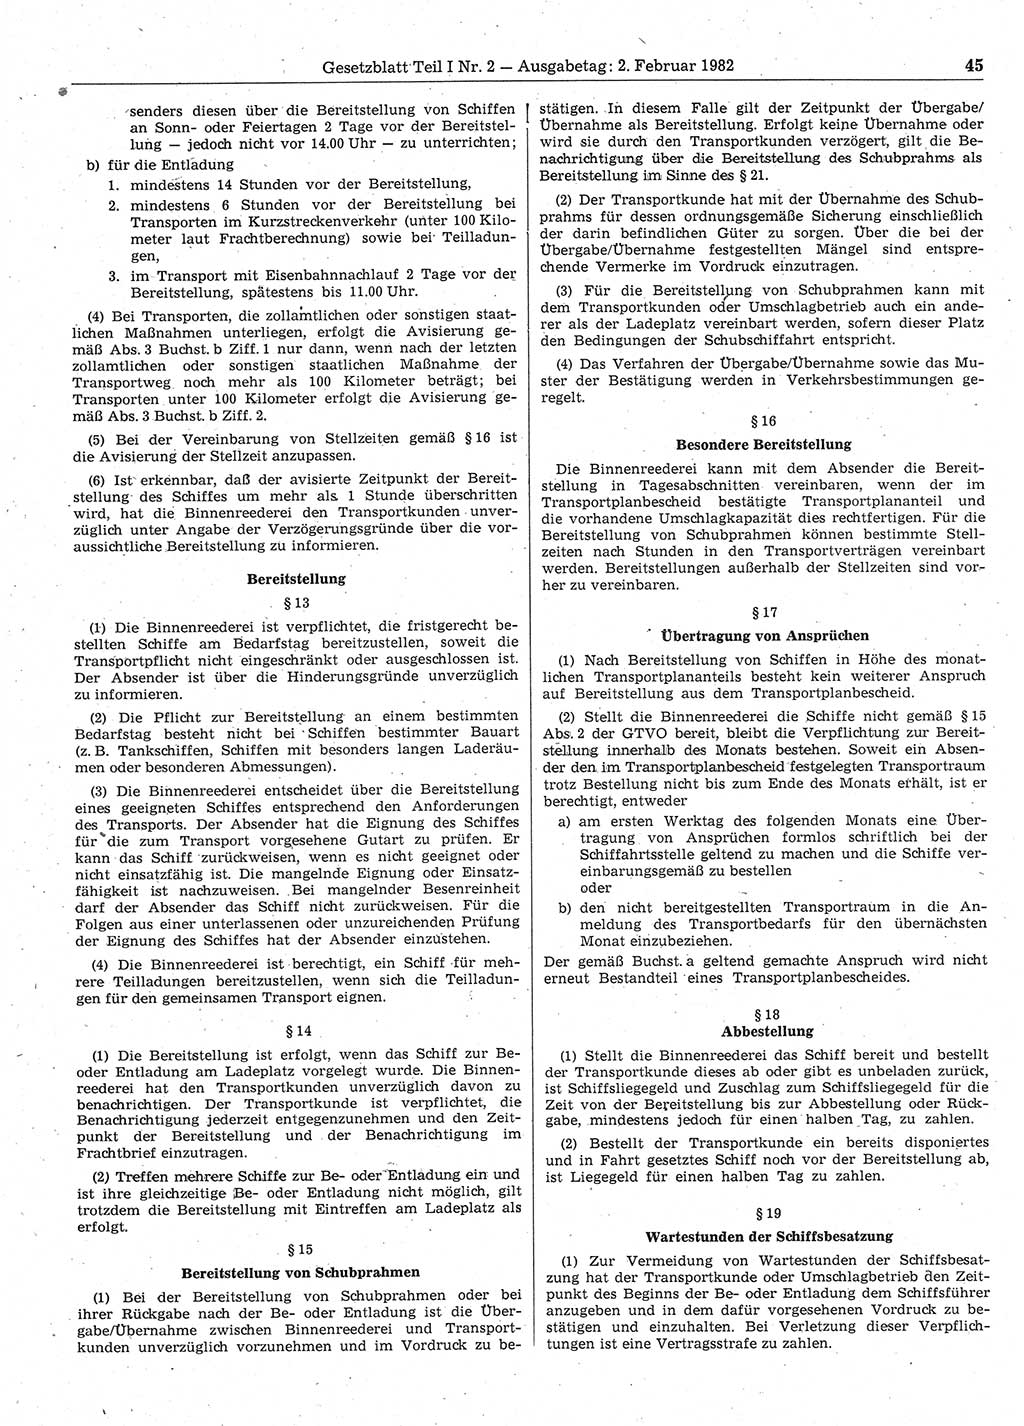 Gesetzblatt (GBl.) der Deutschen Demokratischen Republik (DDR) Teil Ⅰ 1982, Seite 45 (GBl. DDR Ⅰ 1982, S. 45)